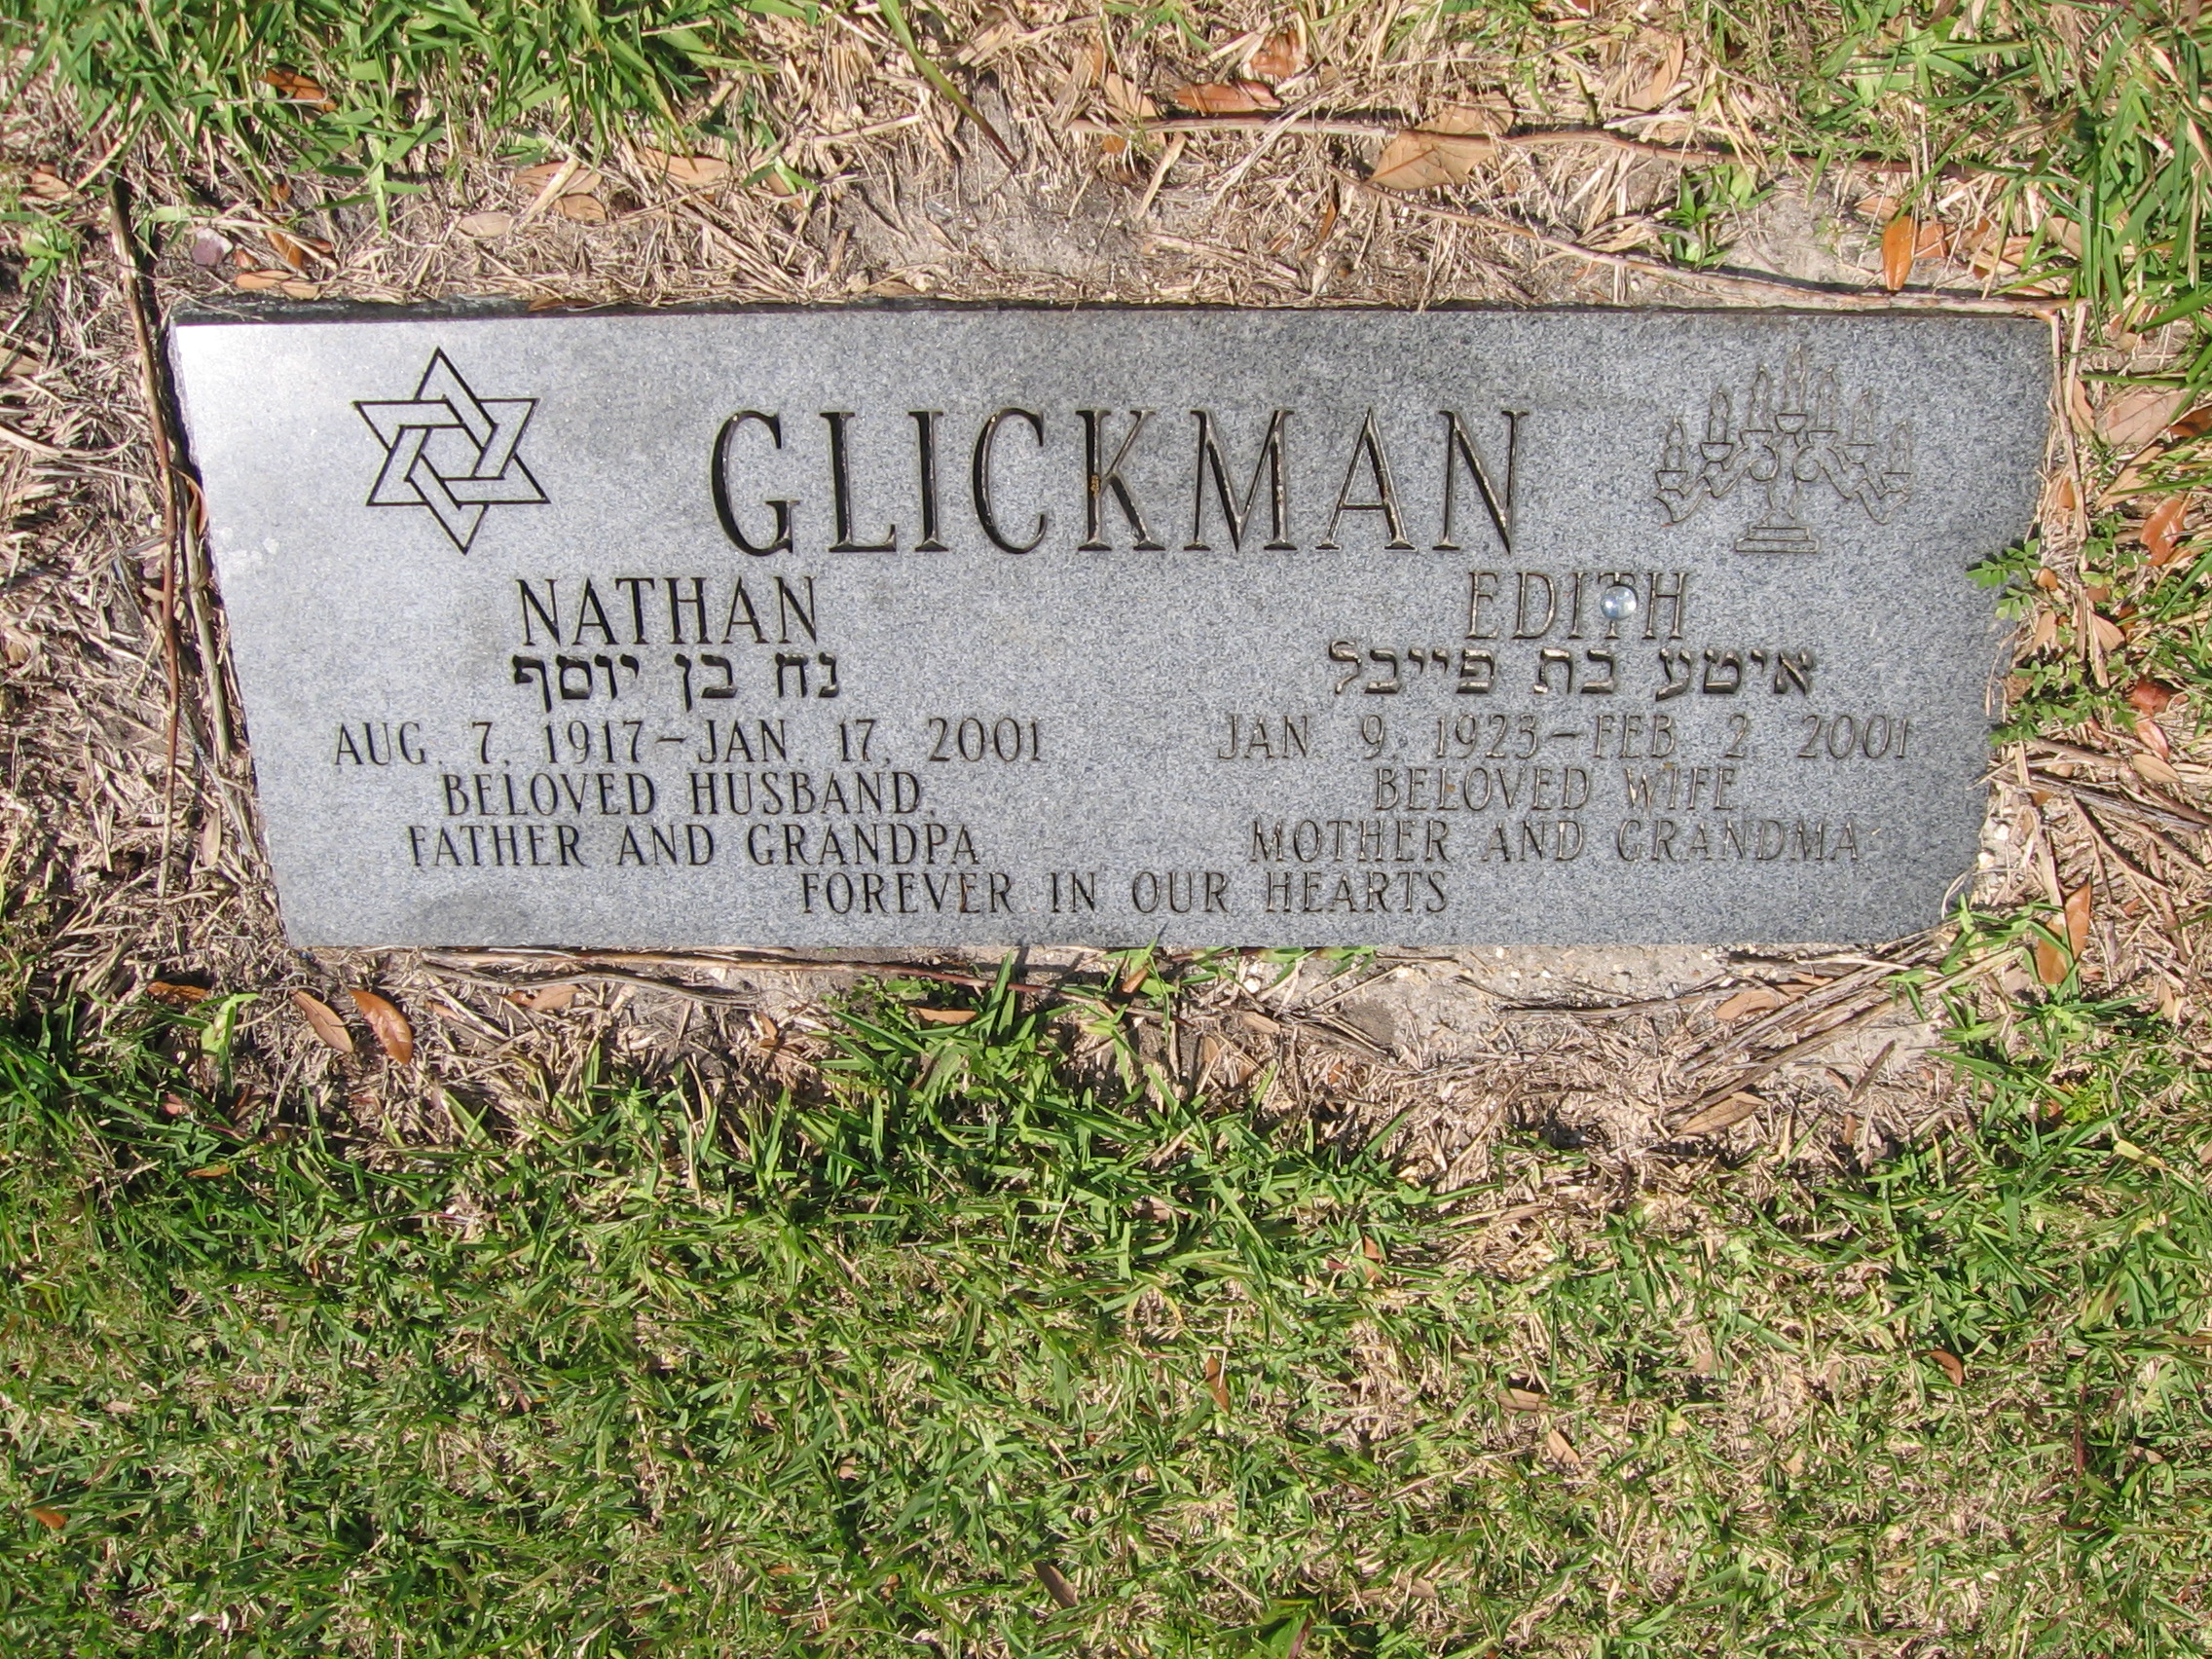 Nathan Glickman